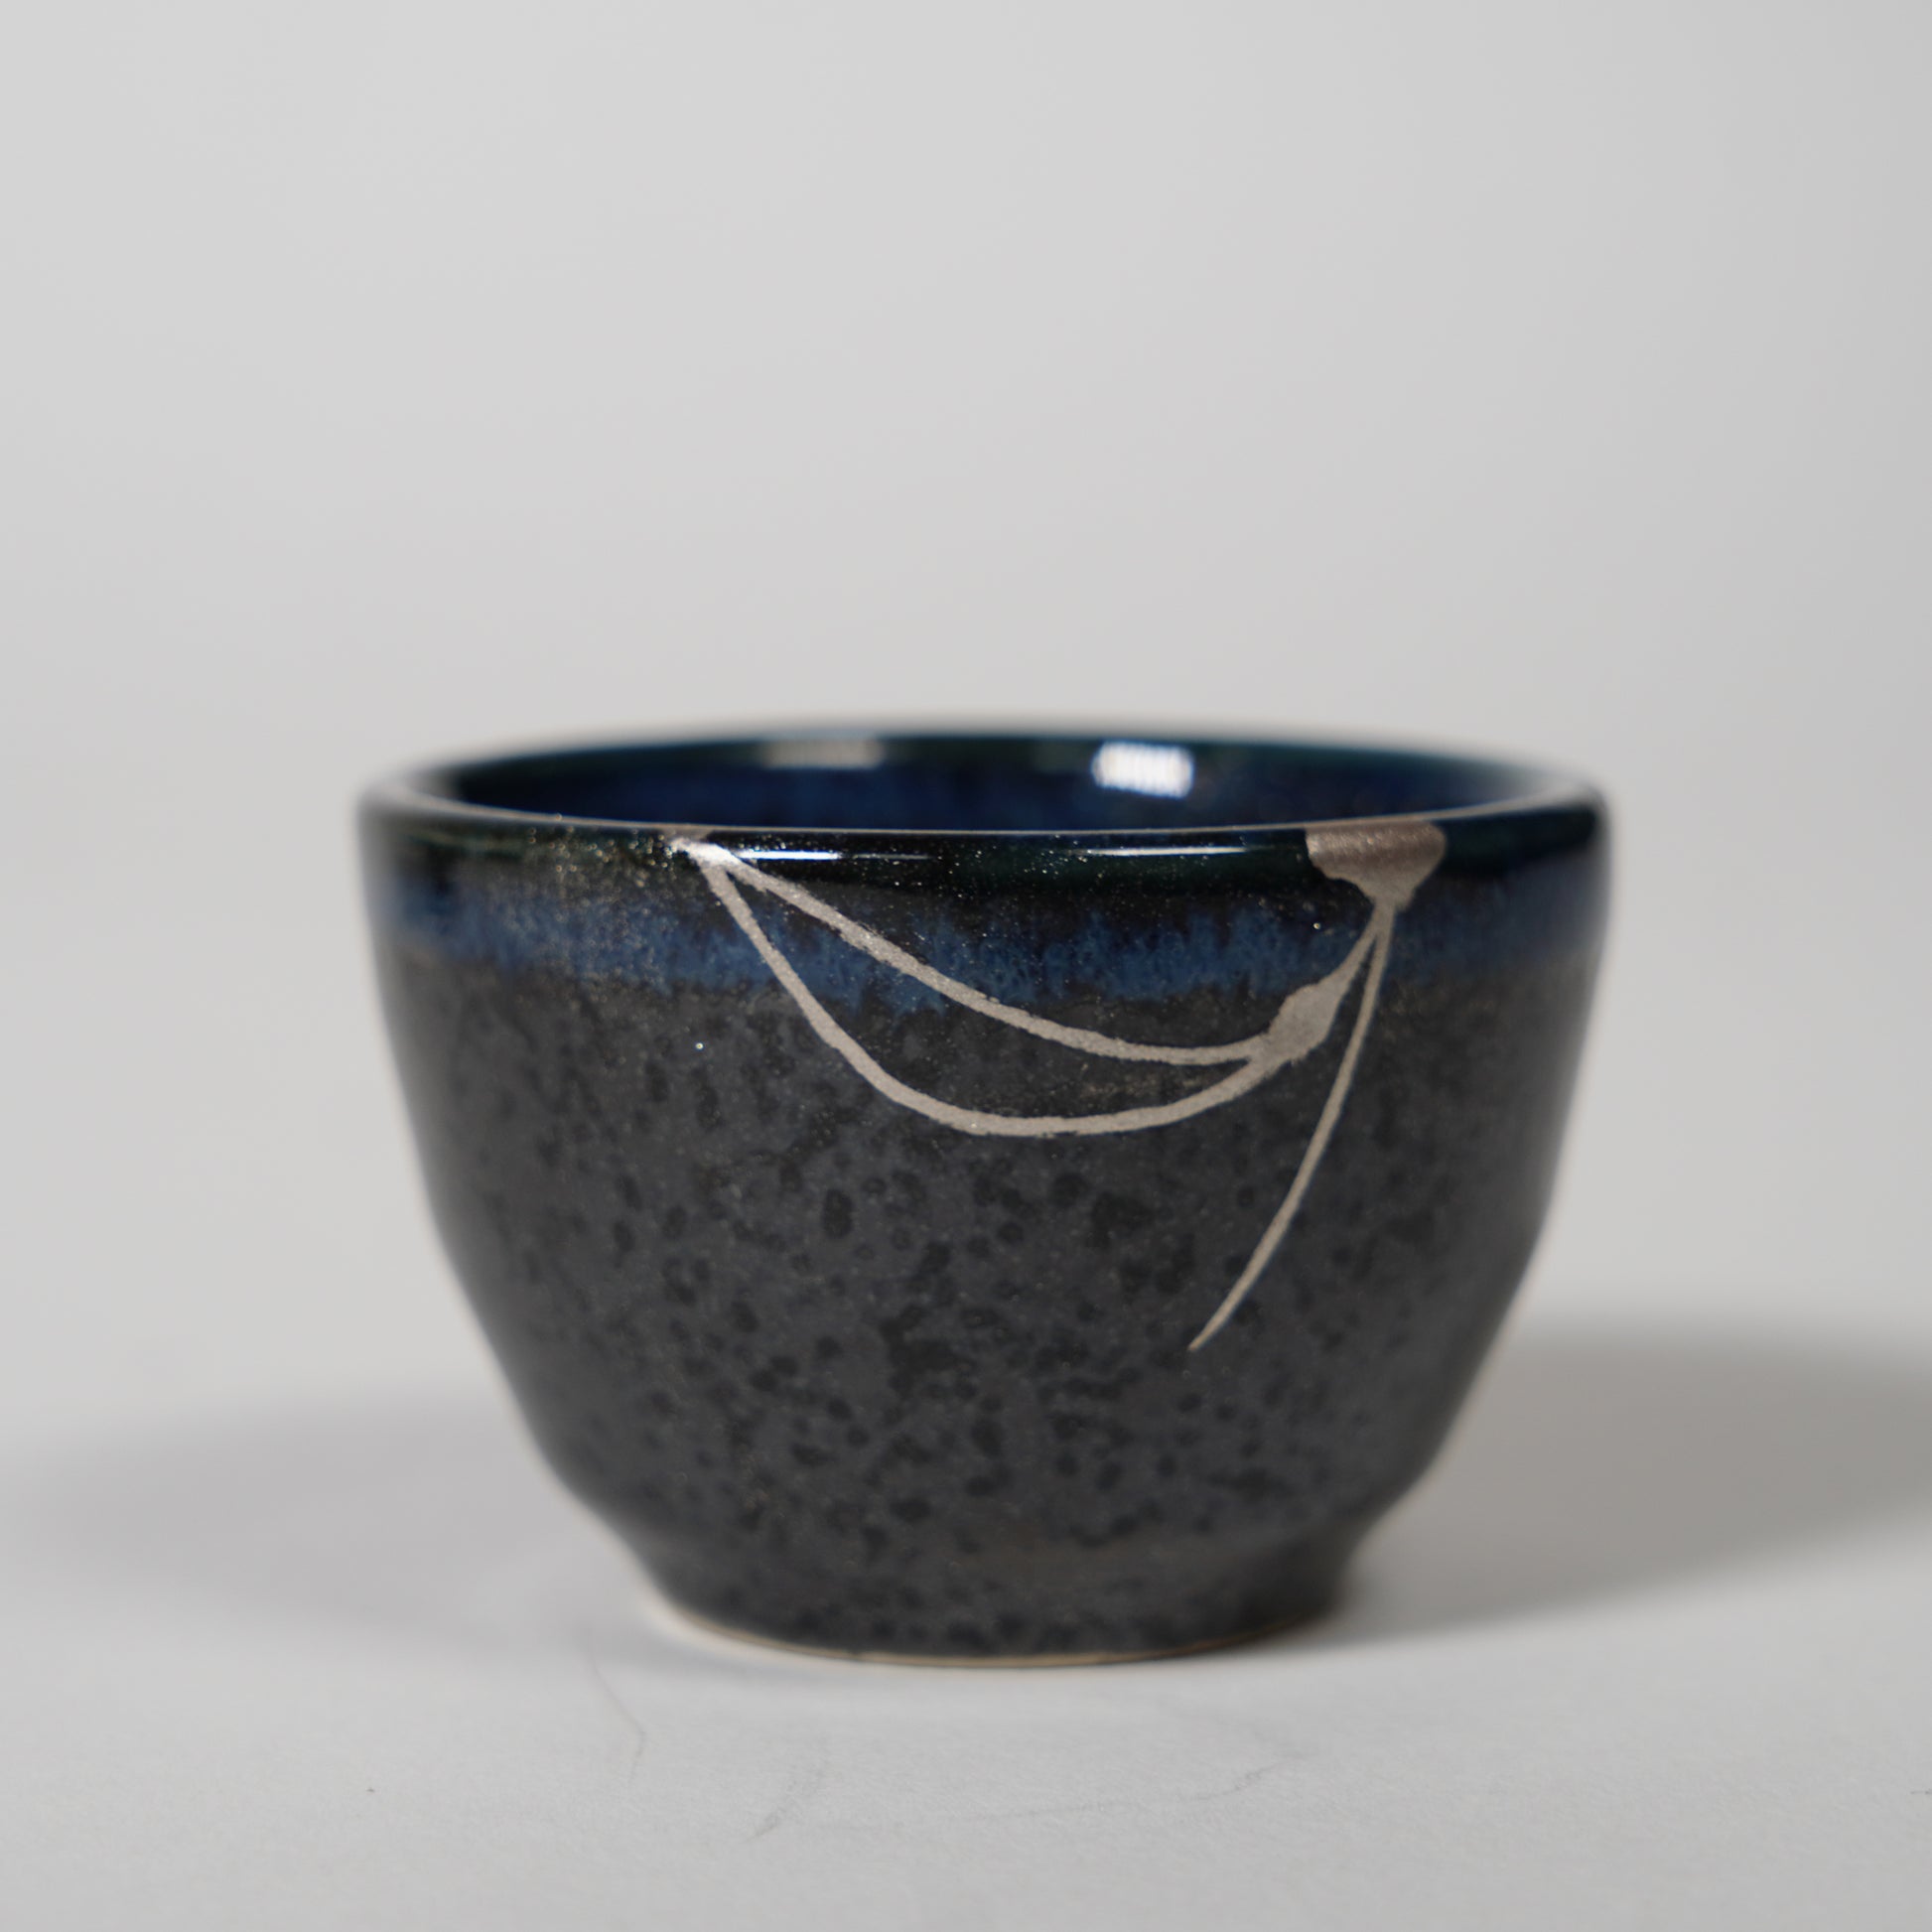 Authentic Kintsugi Pottery Black glaze